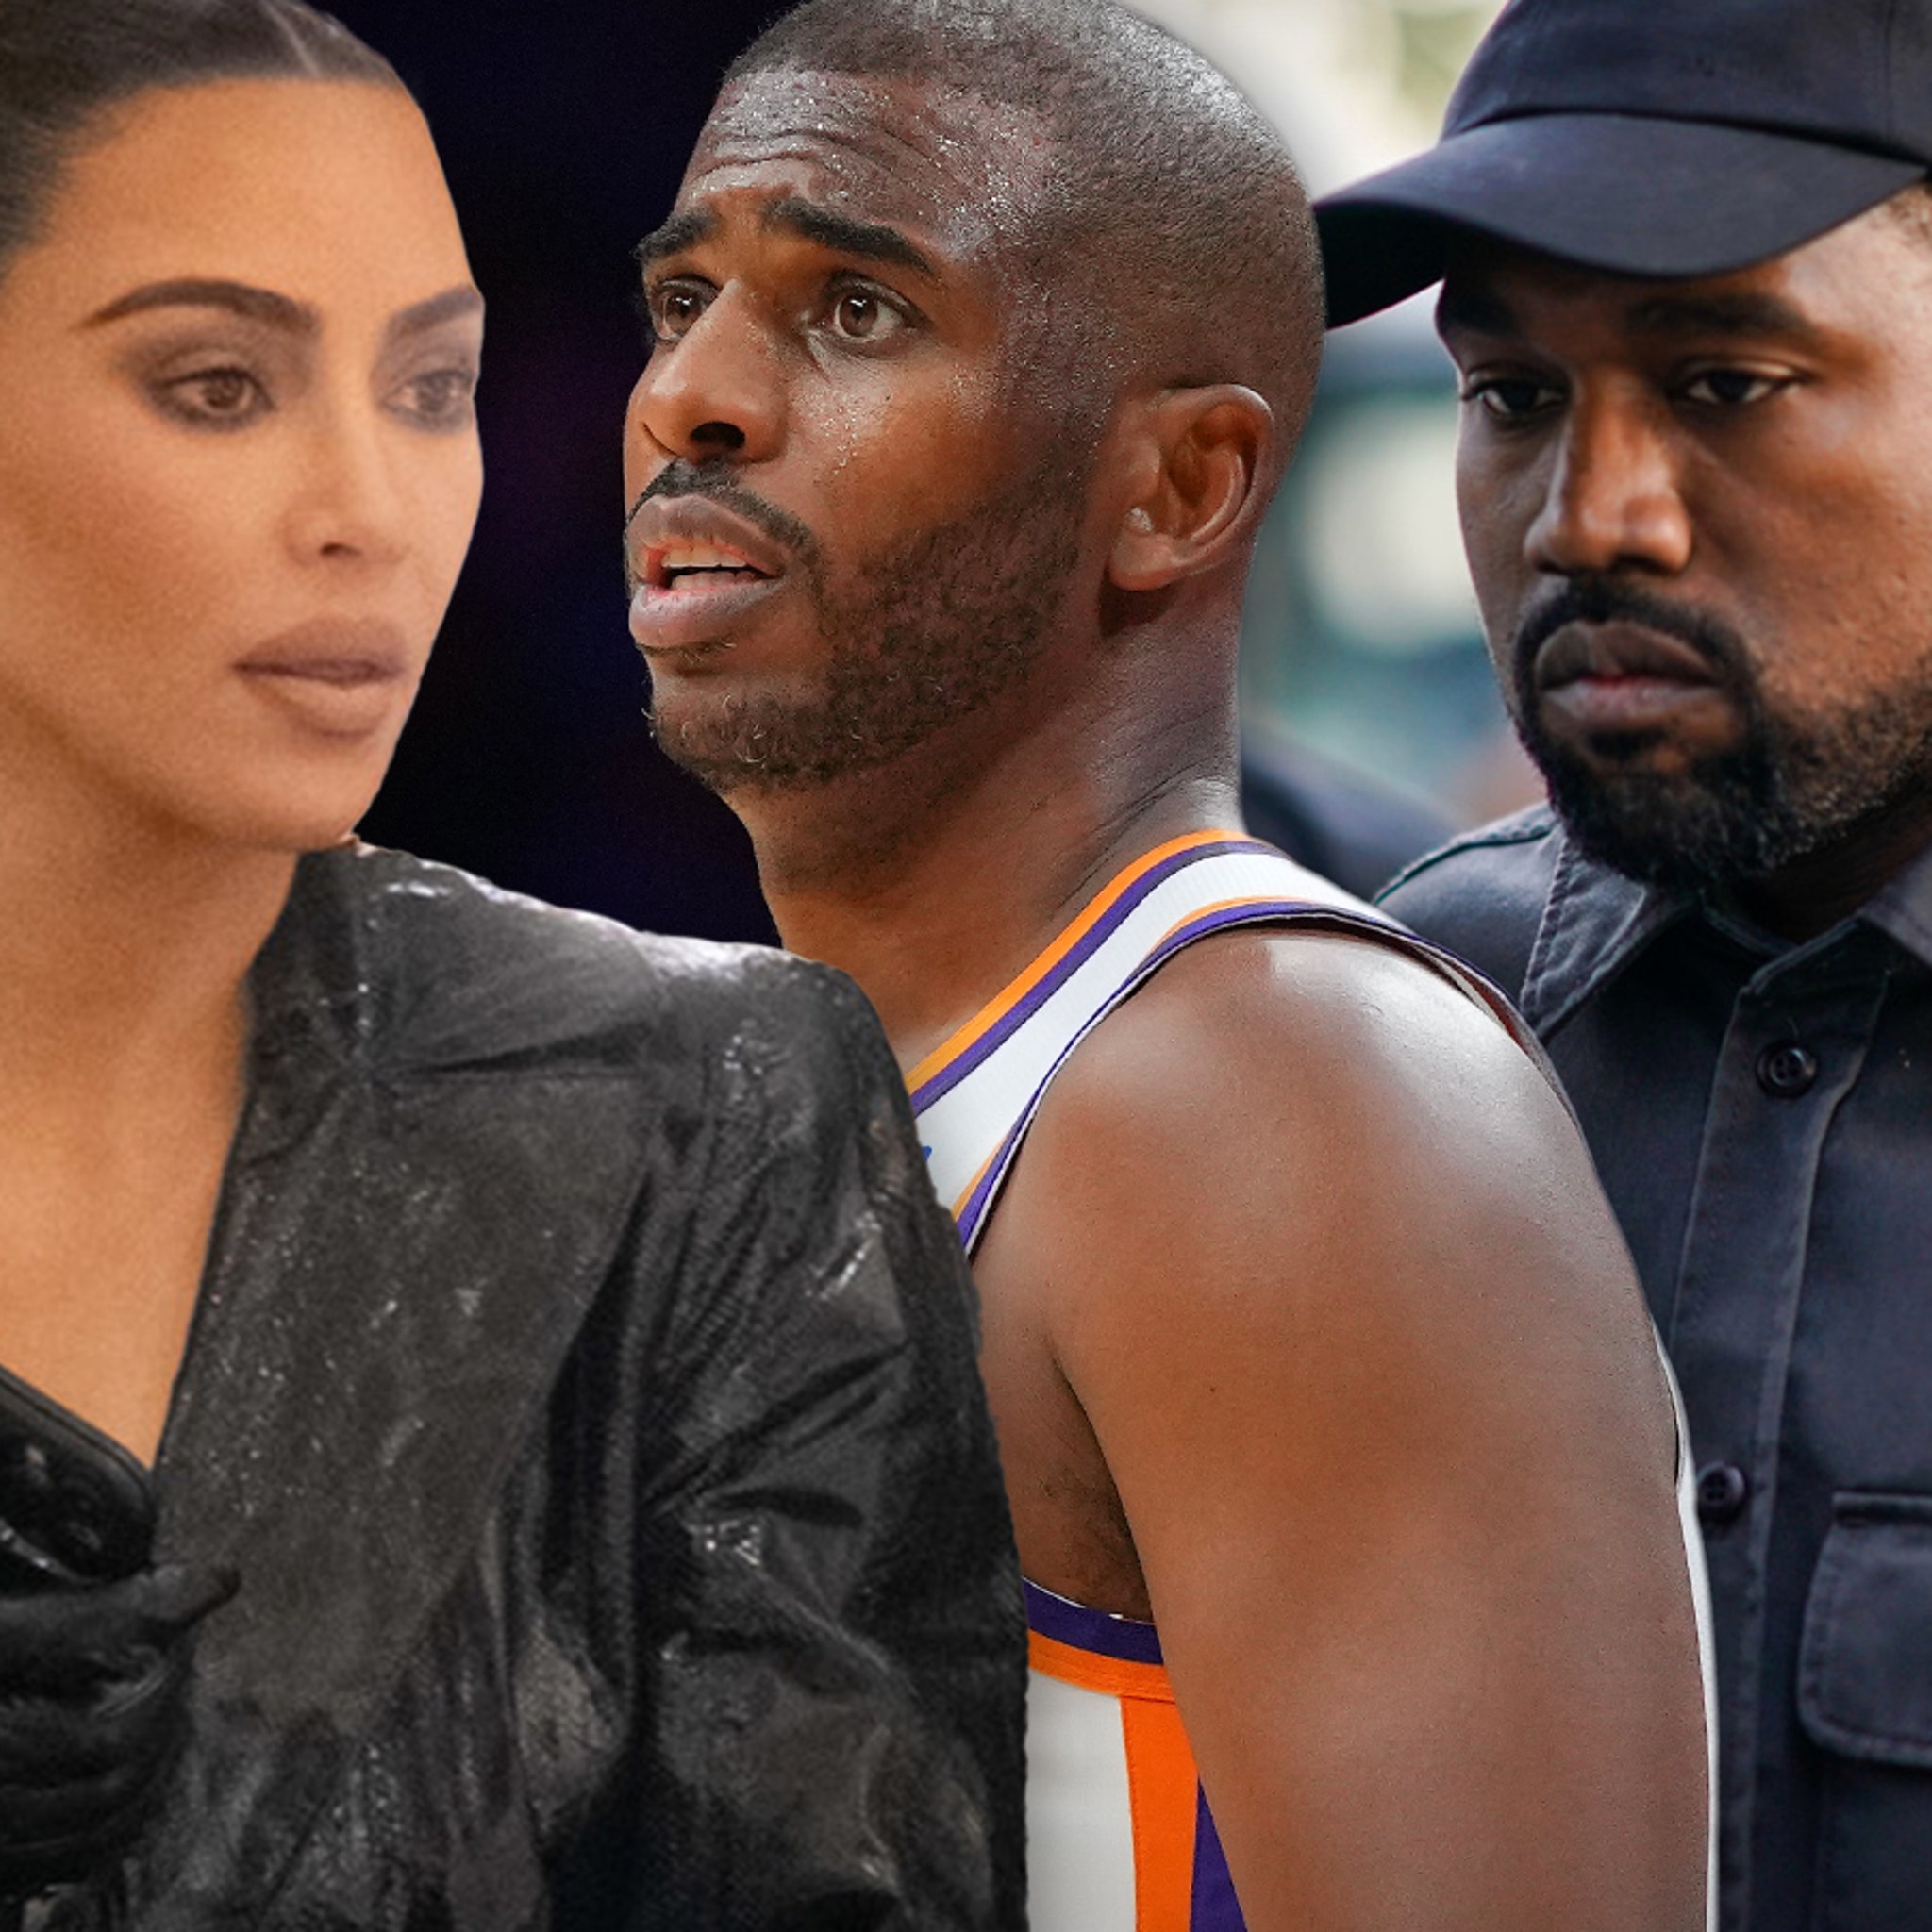 Kim Kardashian Com Video Xnxxx - Kim Kardashian Did Not Cheat on Kanye West with Chris Paul, Sources